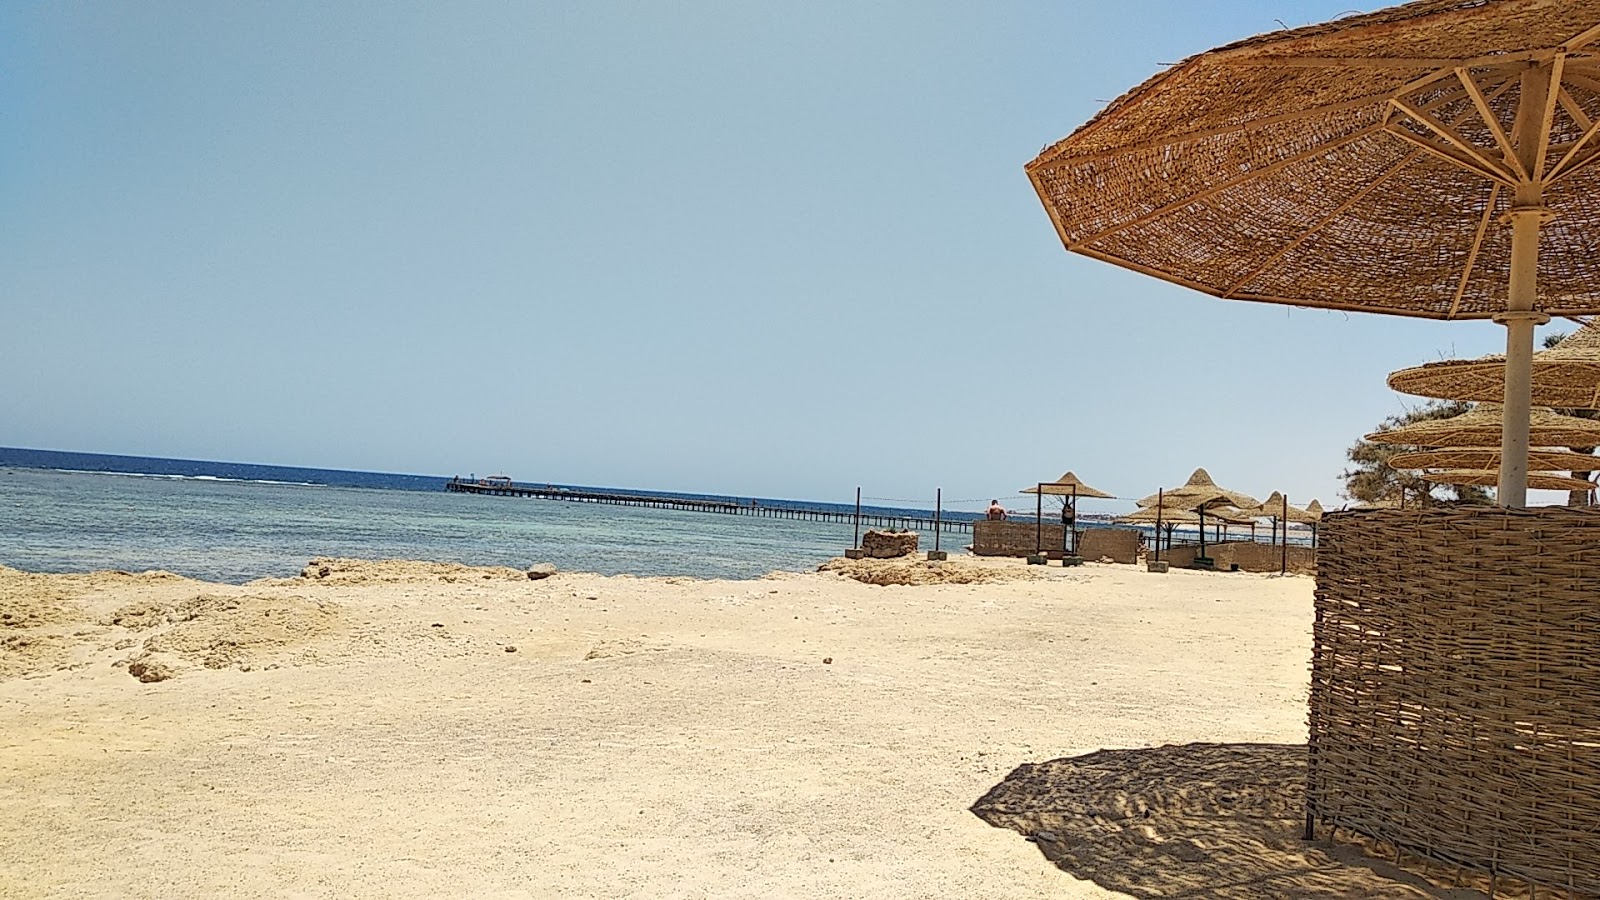 Foto de Flamenco Beach & Resort - lugar popular entre los conocedores del relax